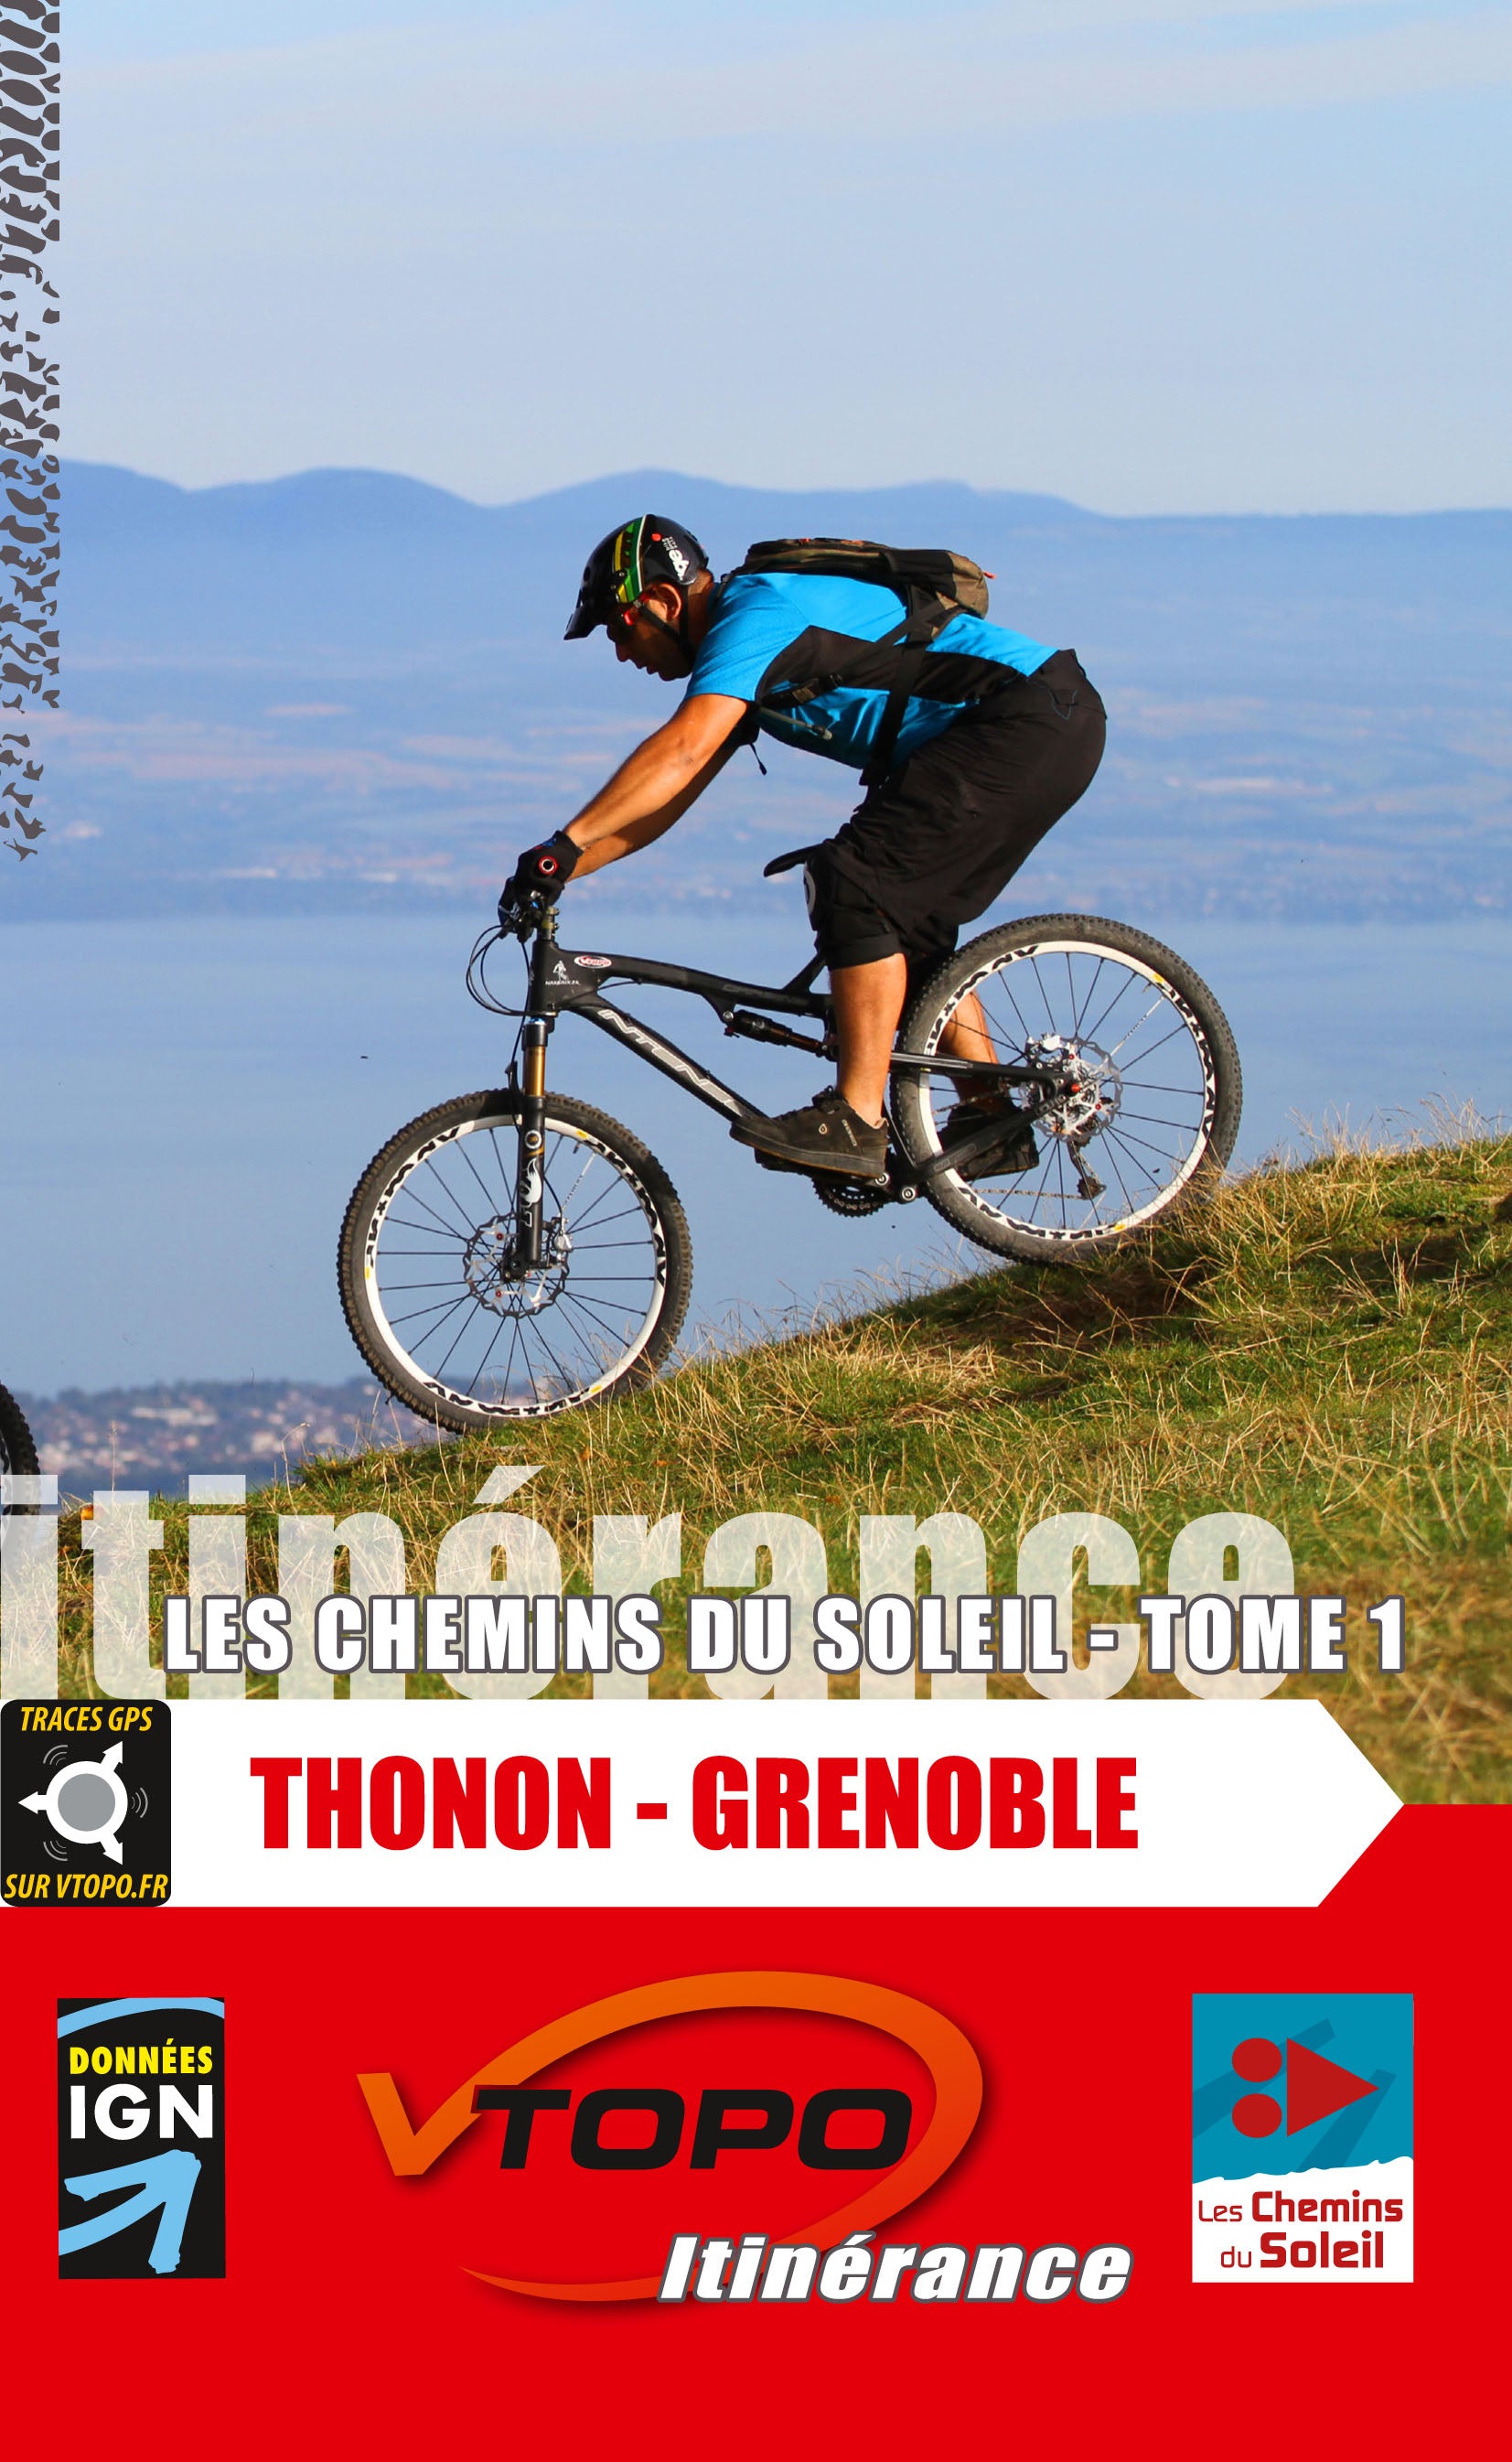 VTOPO MTB Roaming Chemins du Soleil Thonon-les-Bains Grenoble